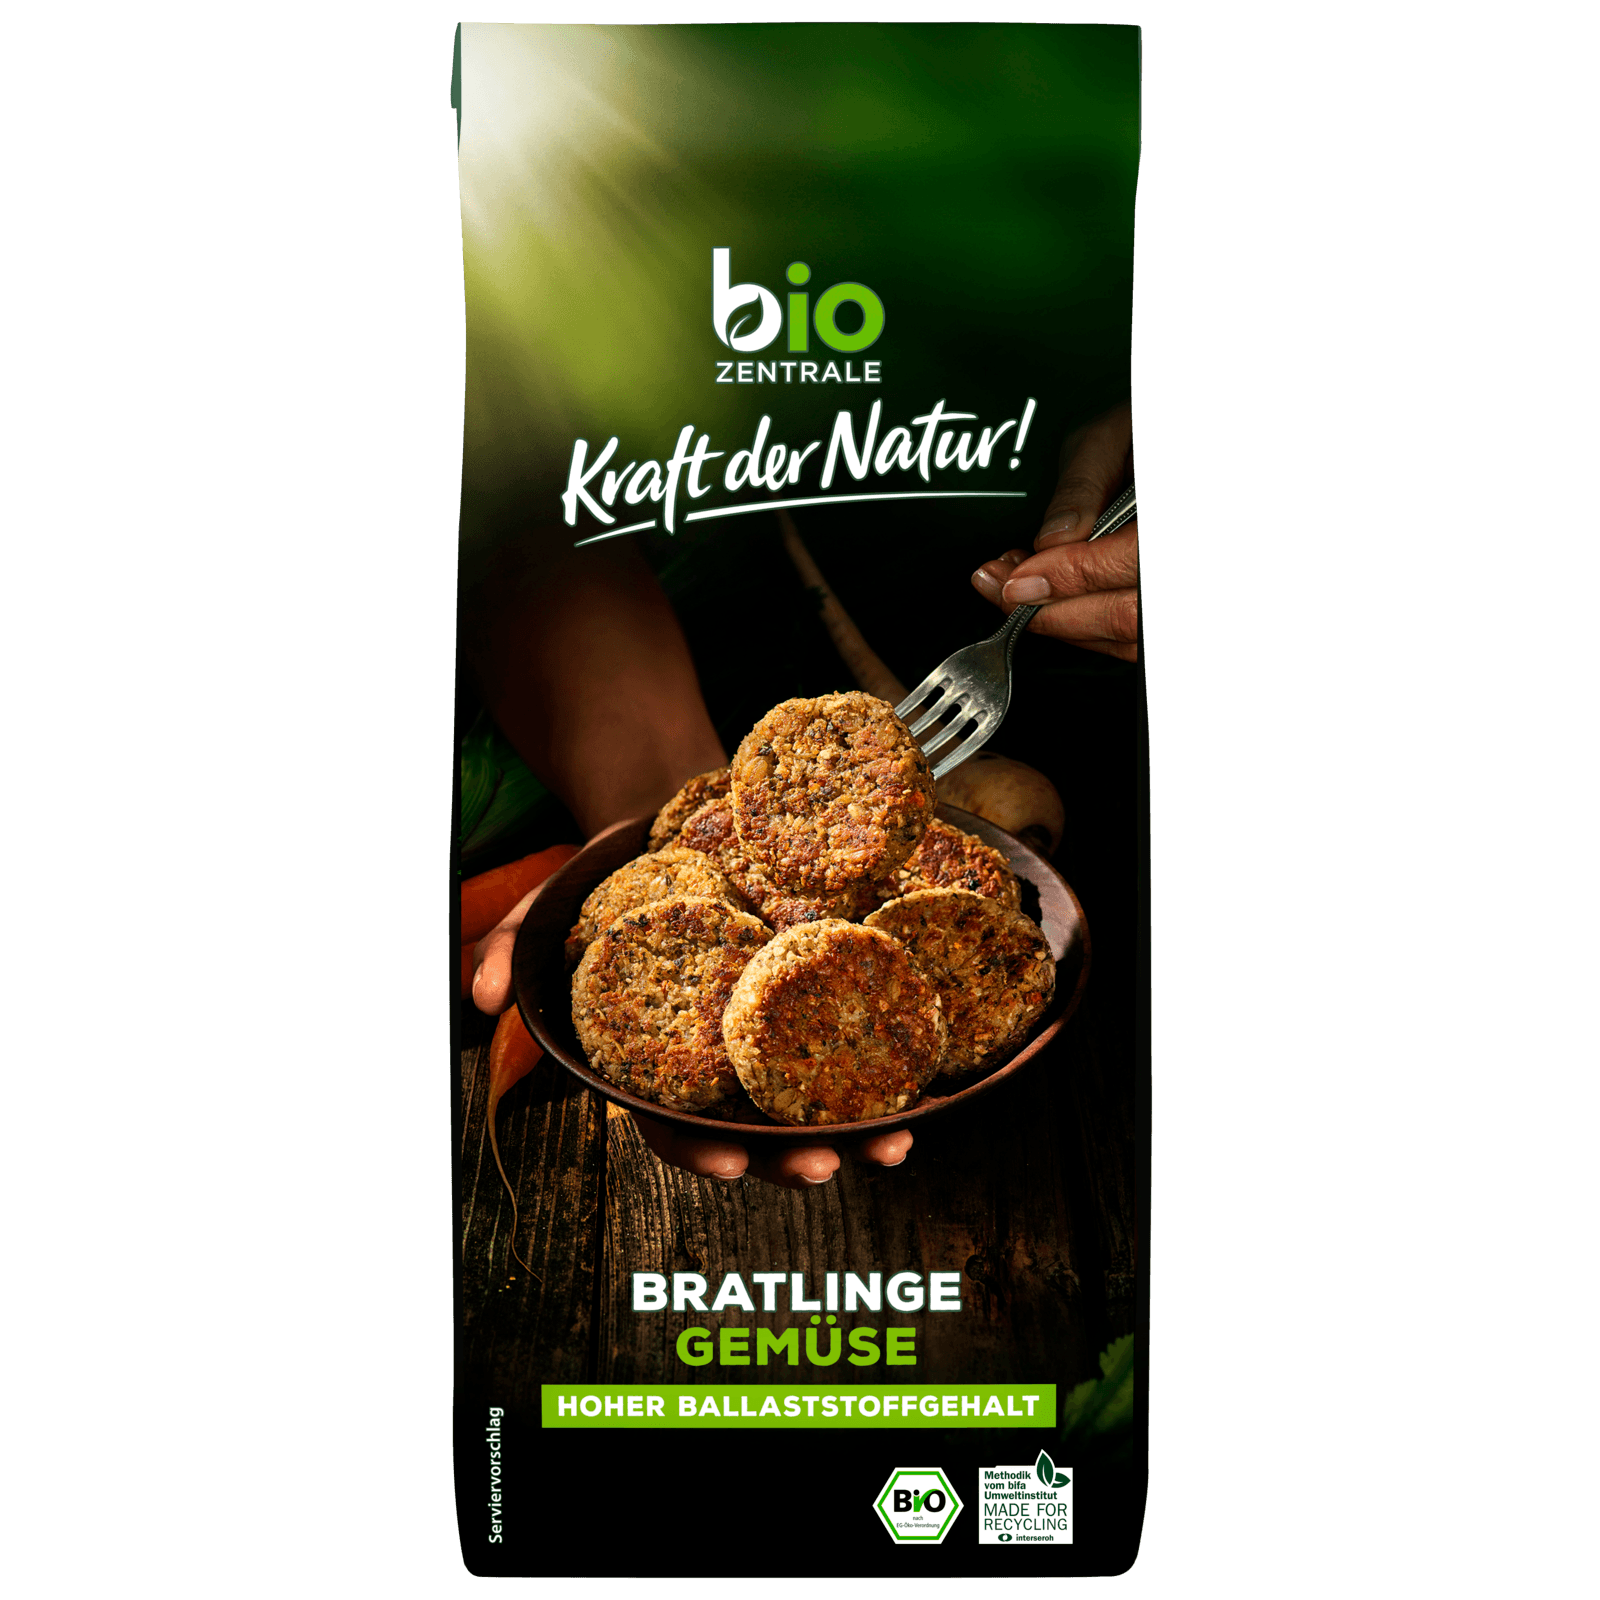 Biozentrale Bio Bratlinge Gemüse 300g  für 2.99 EUR